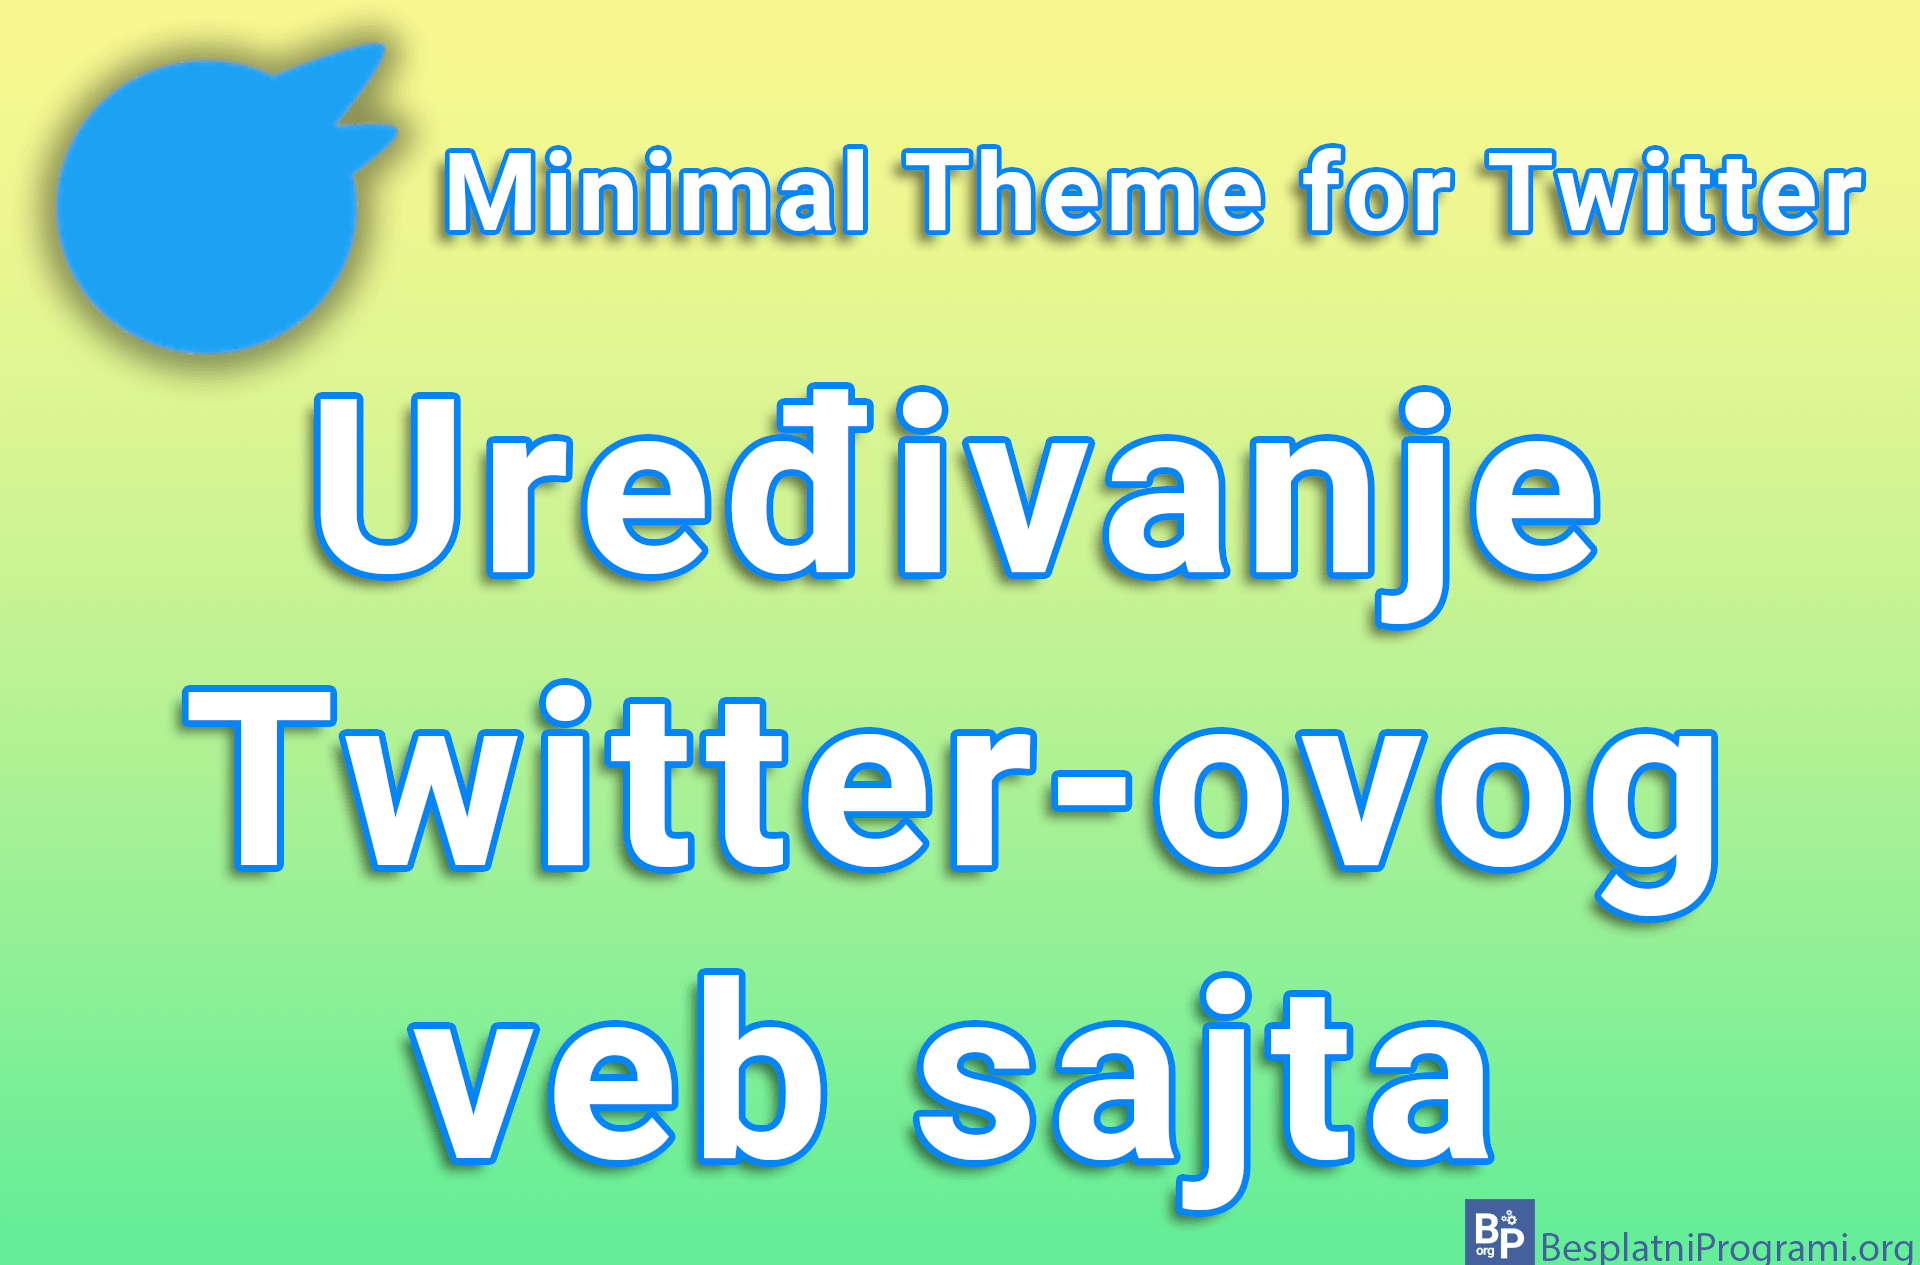 Minimal Theme for Twitter – Uređivanje Twitter-ovog veb sajta